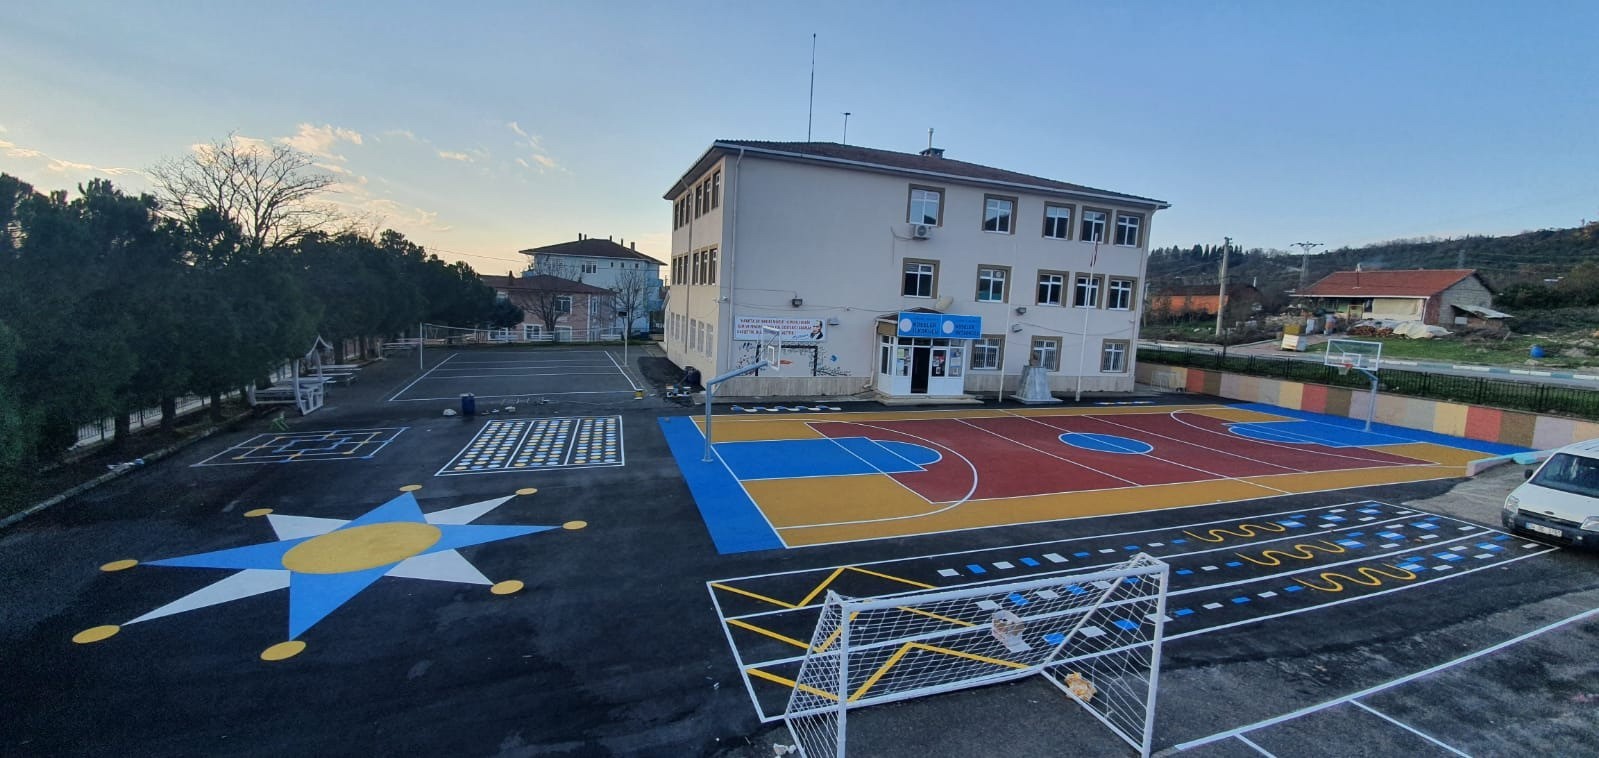 Dilovası Köseler Ortaokuluna basketbol ve voleybol sahası #kocaeli